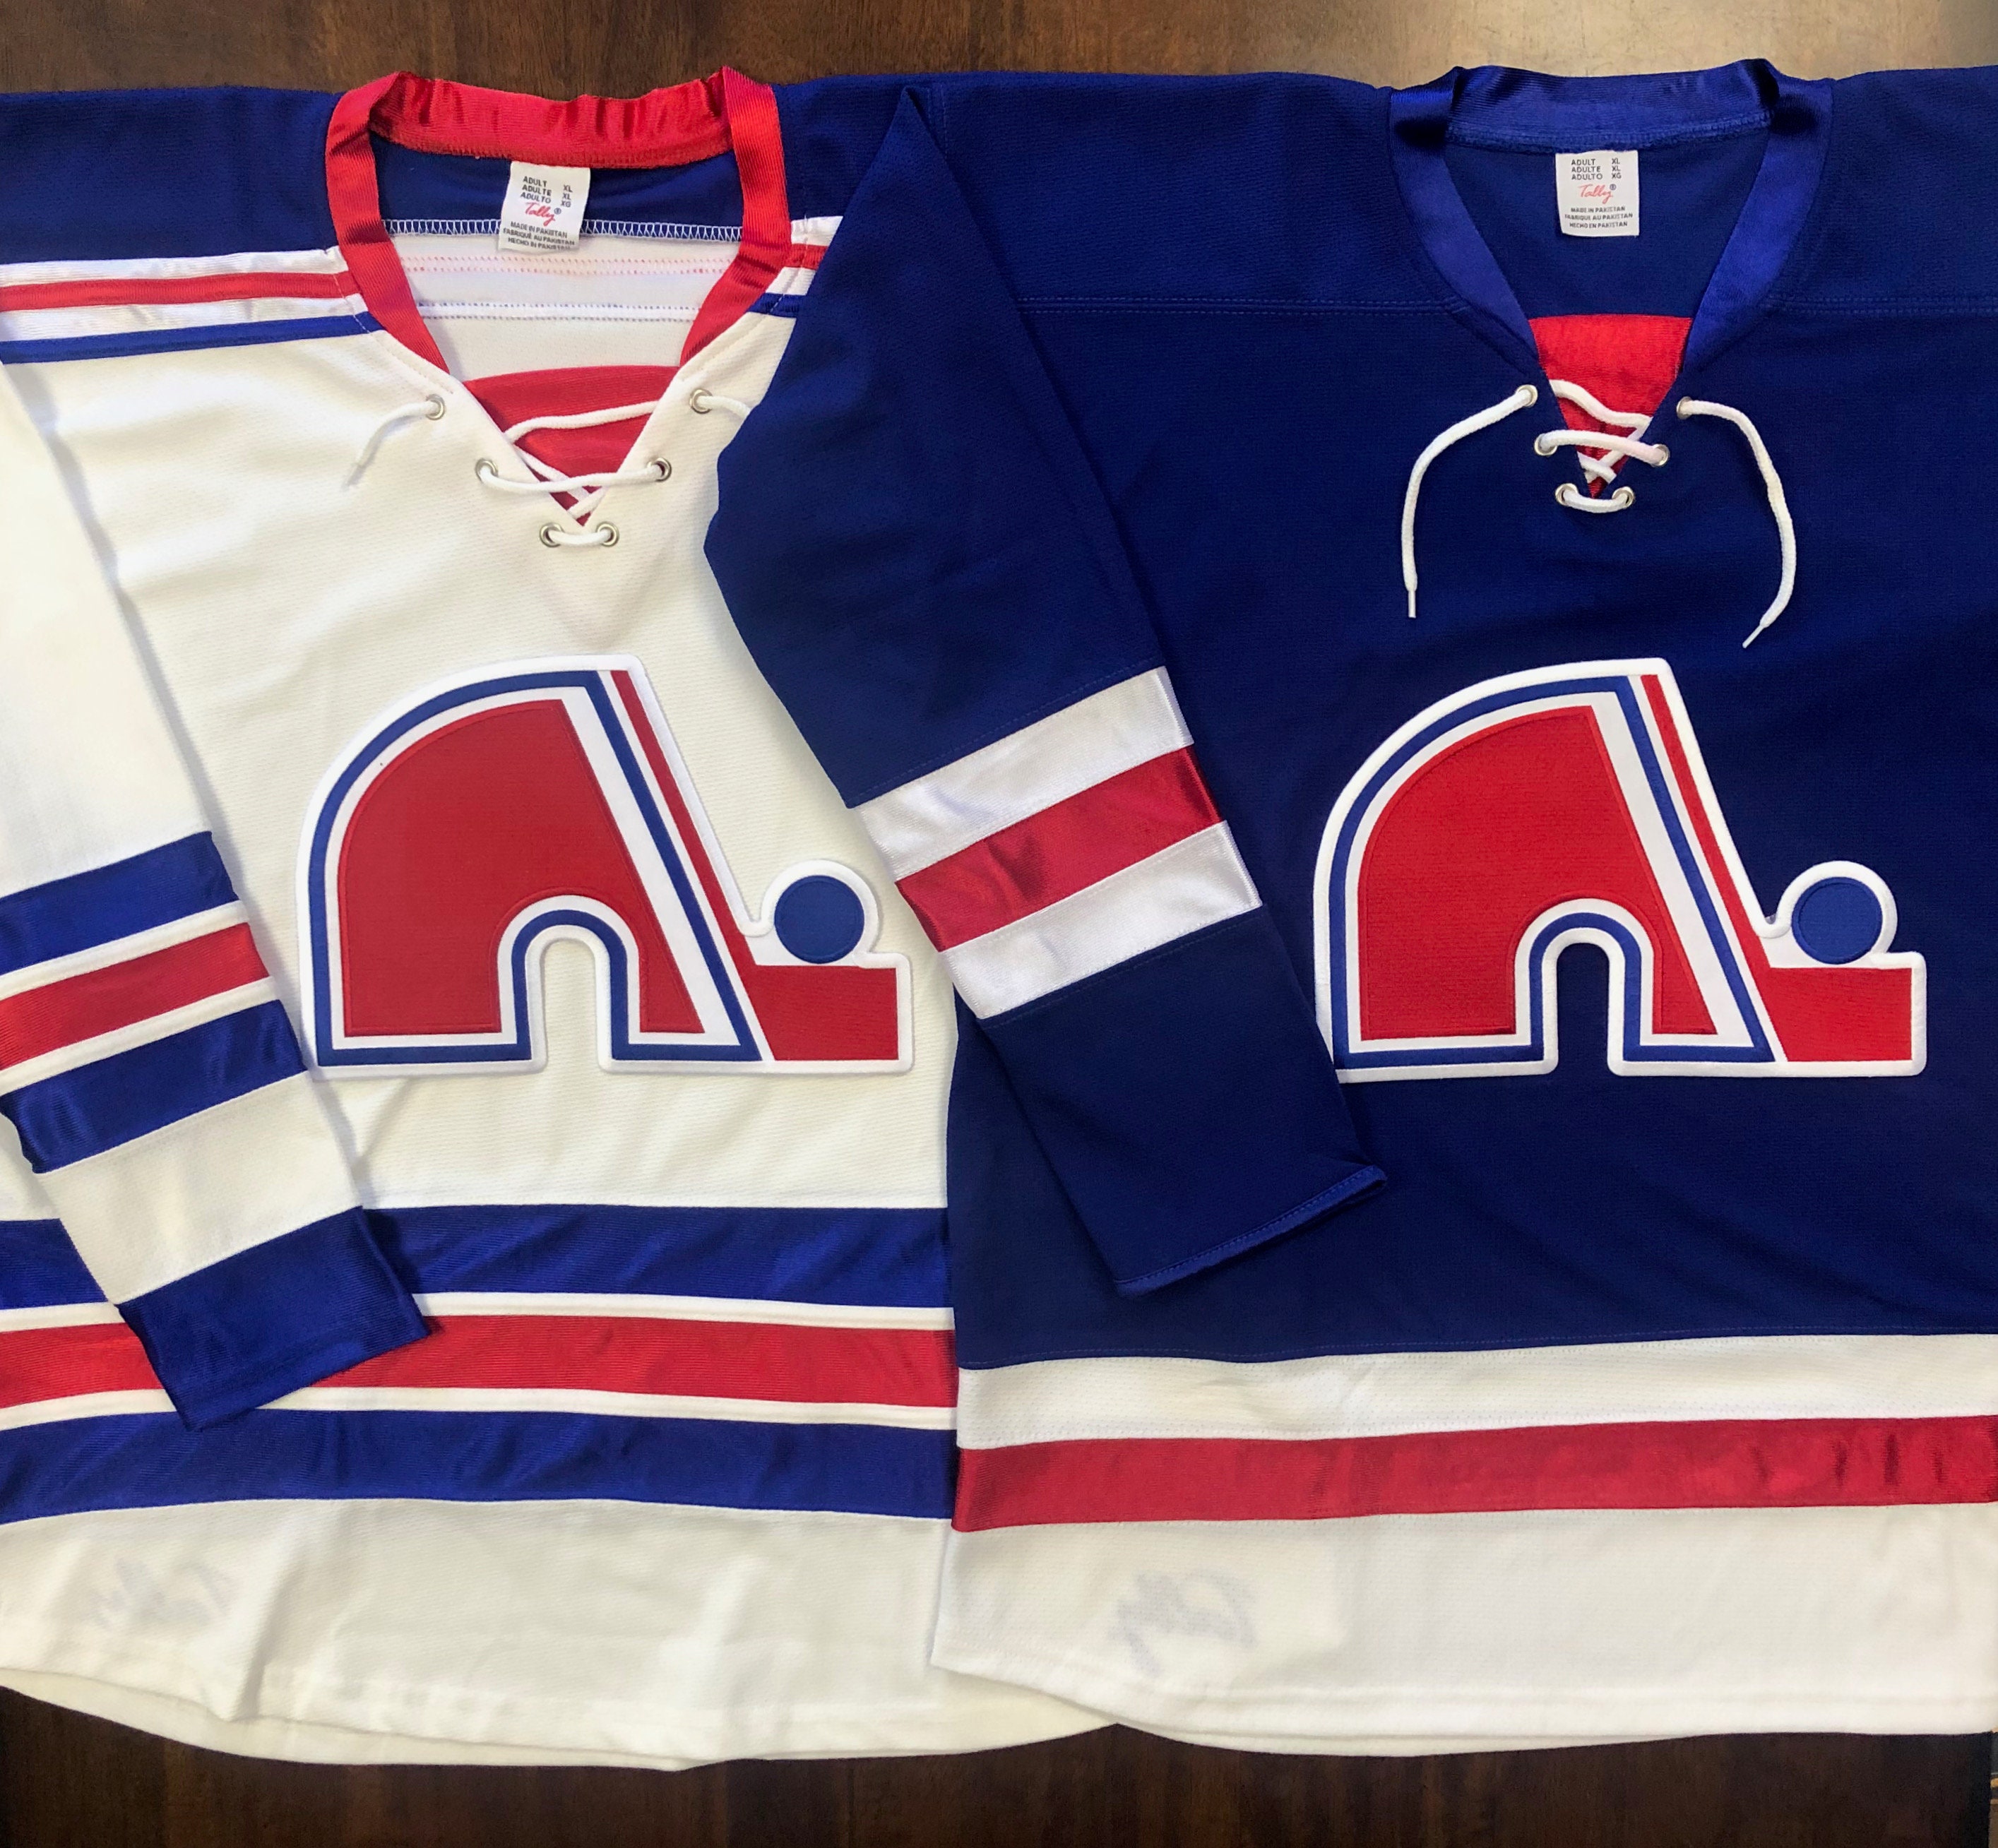 Avalanche “reverse retro” jerseys have Quebec Nordiques flavor